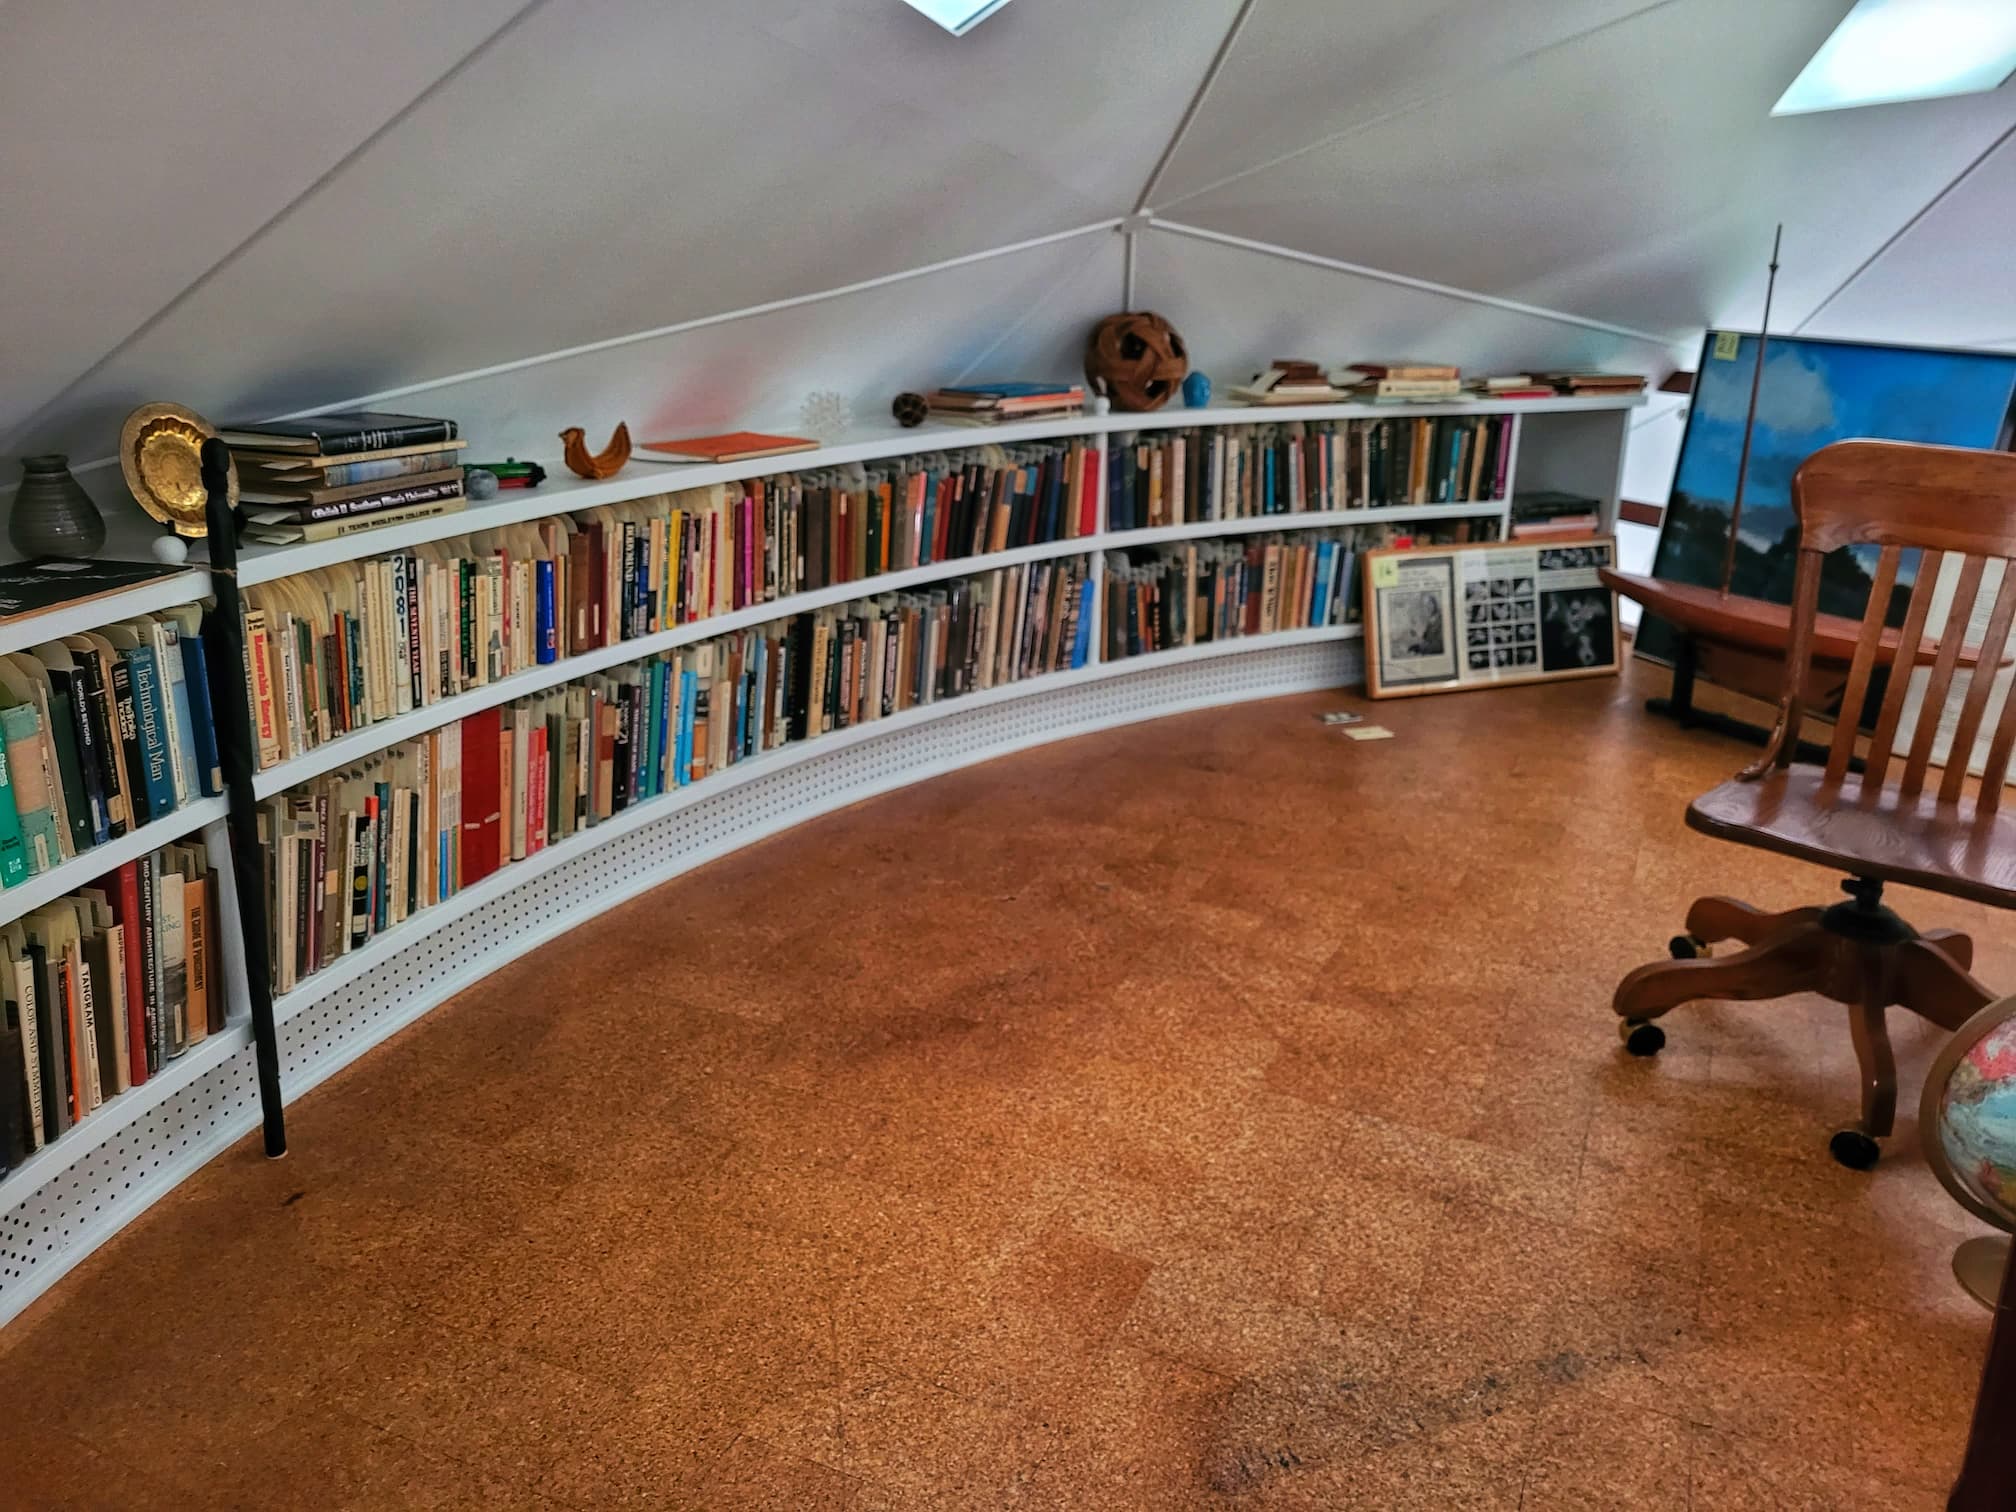 buckminster fuller's library in loft of bucky dome home